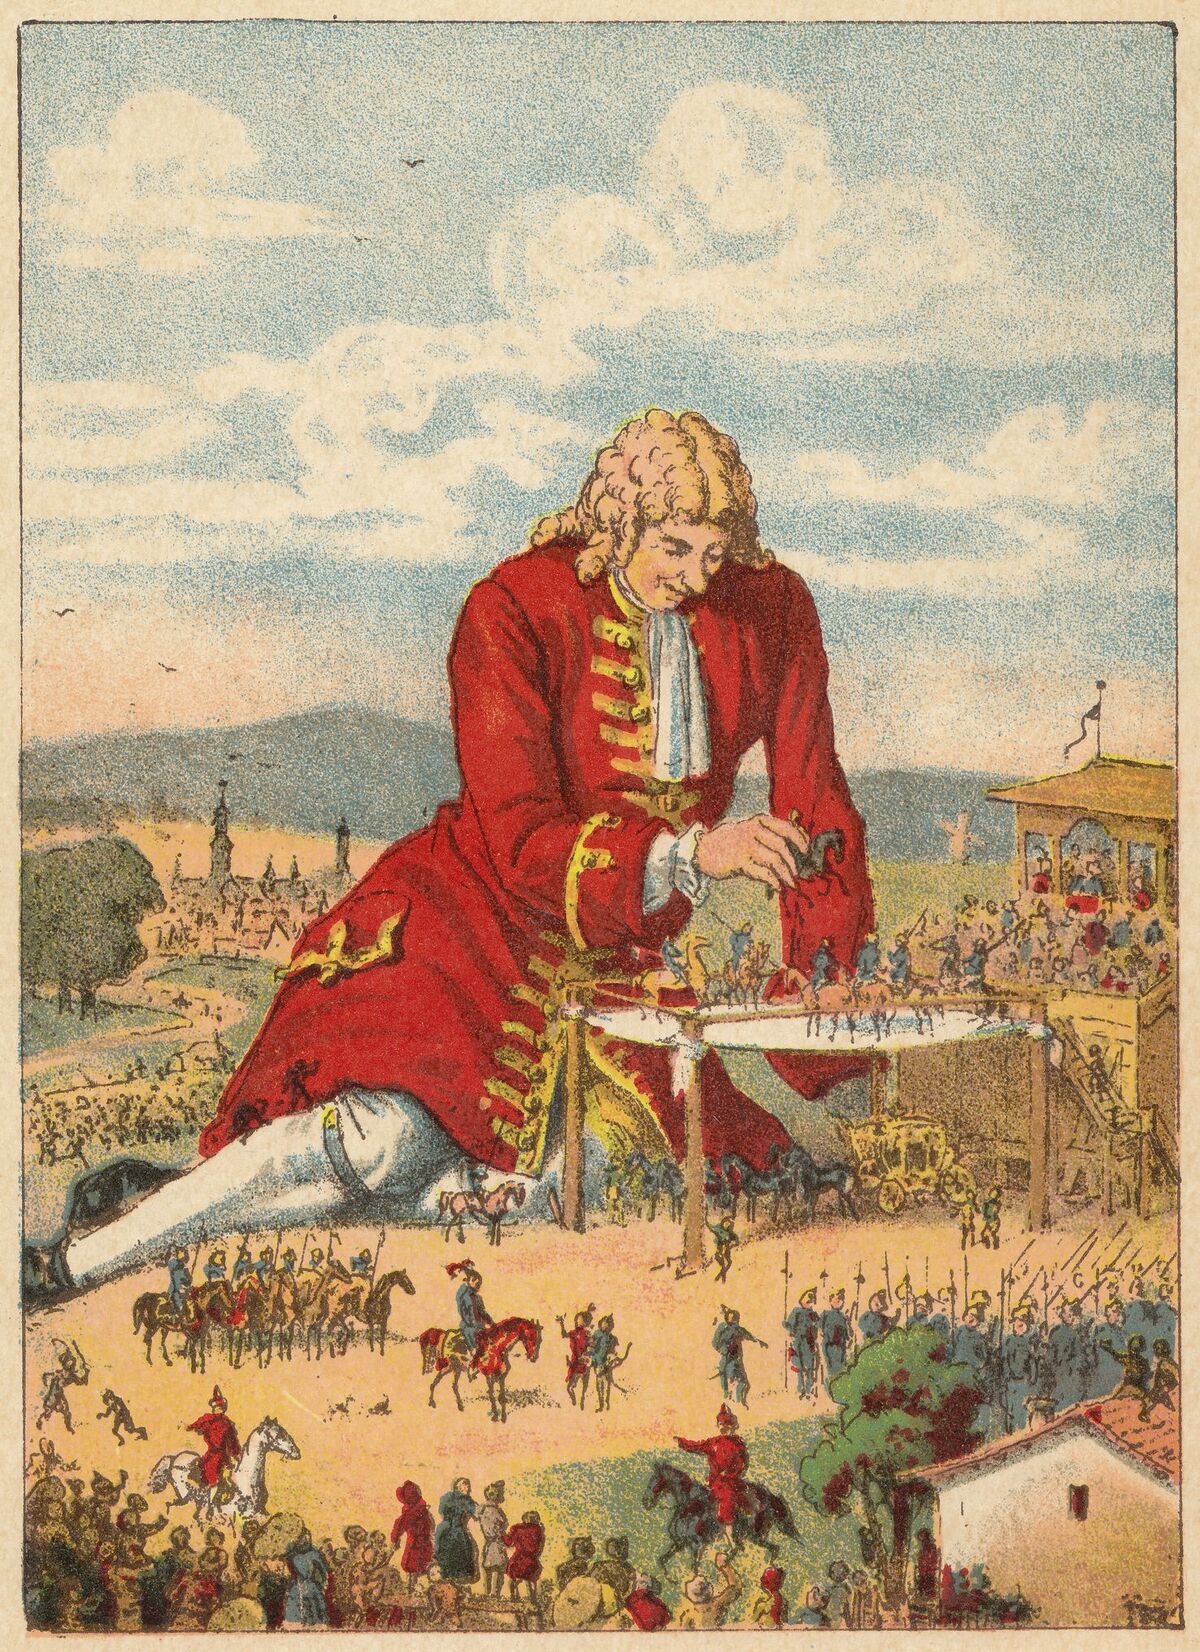 Путешествие в лилипутию слушать. Джонатан Свифт Gulliver's Travels 1726. Джонатан Свифт путешествия Гулливера путешествие в Лилипутию. Jonathan Swift Gulliver's Travels. Джонатан Свифт путешествия Гулливера иллюстрации.